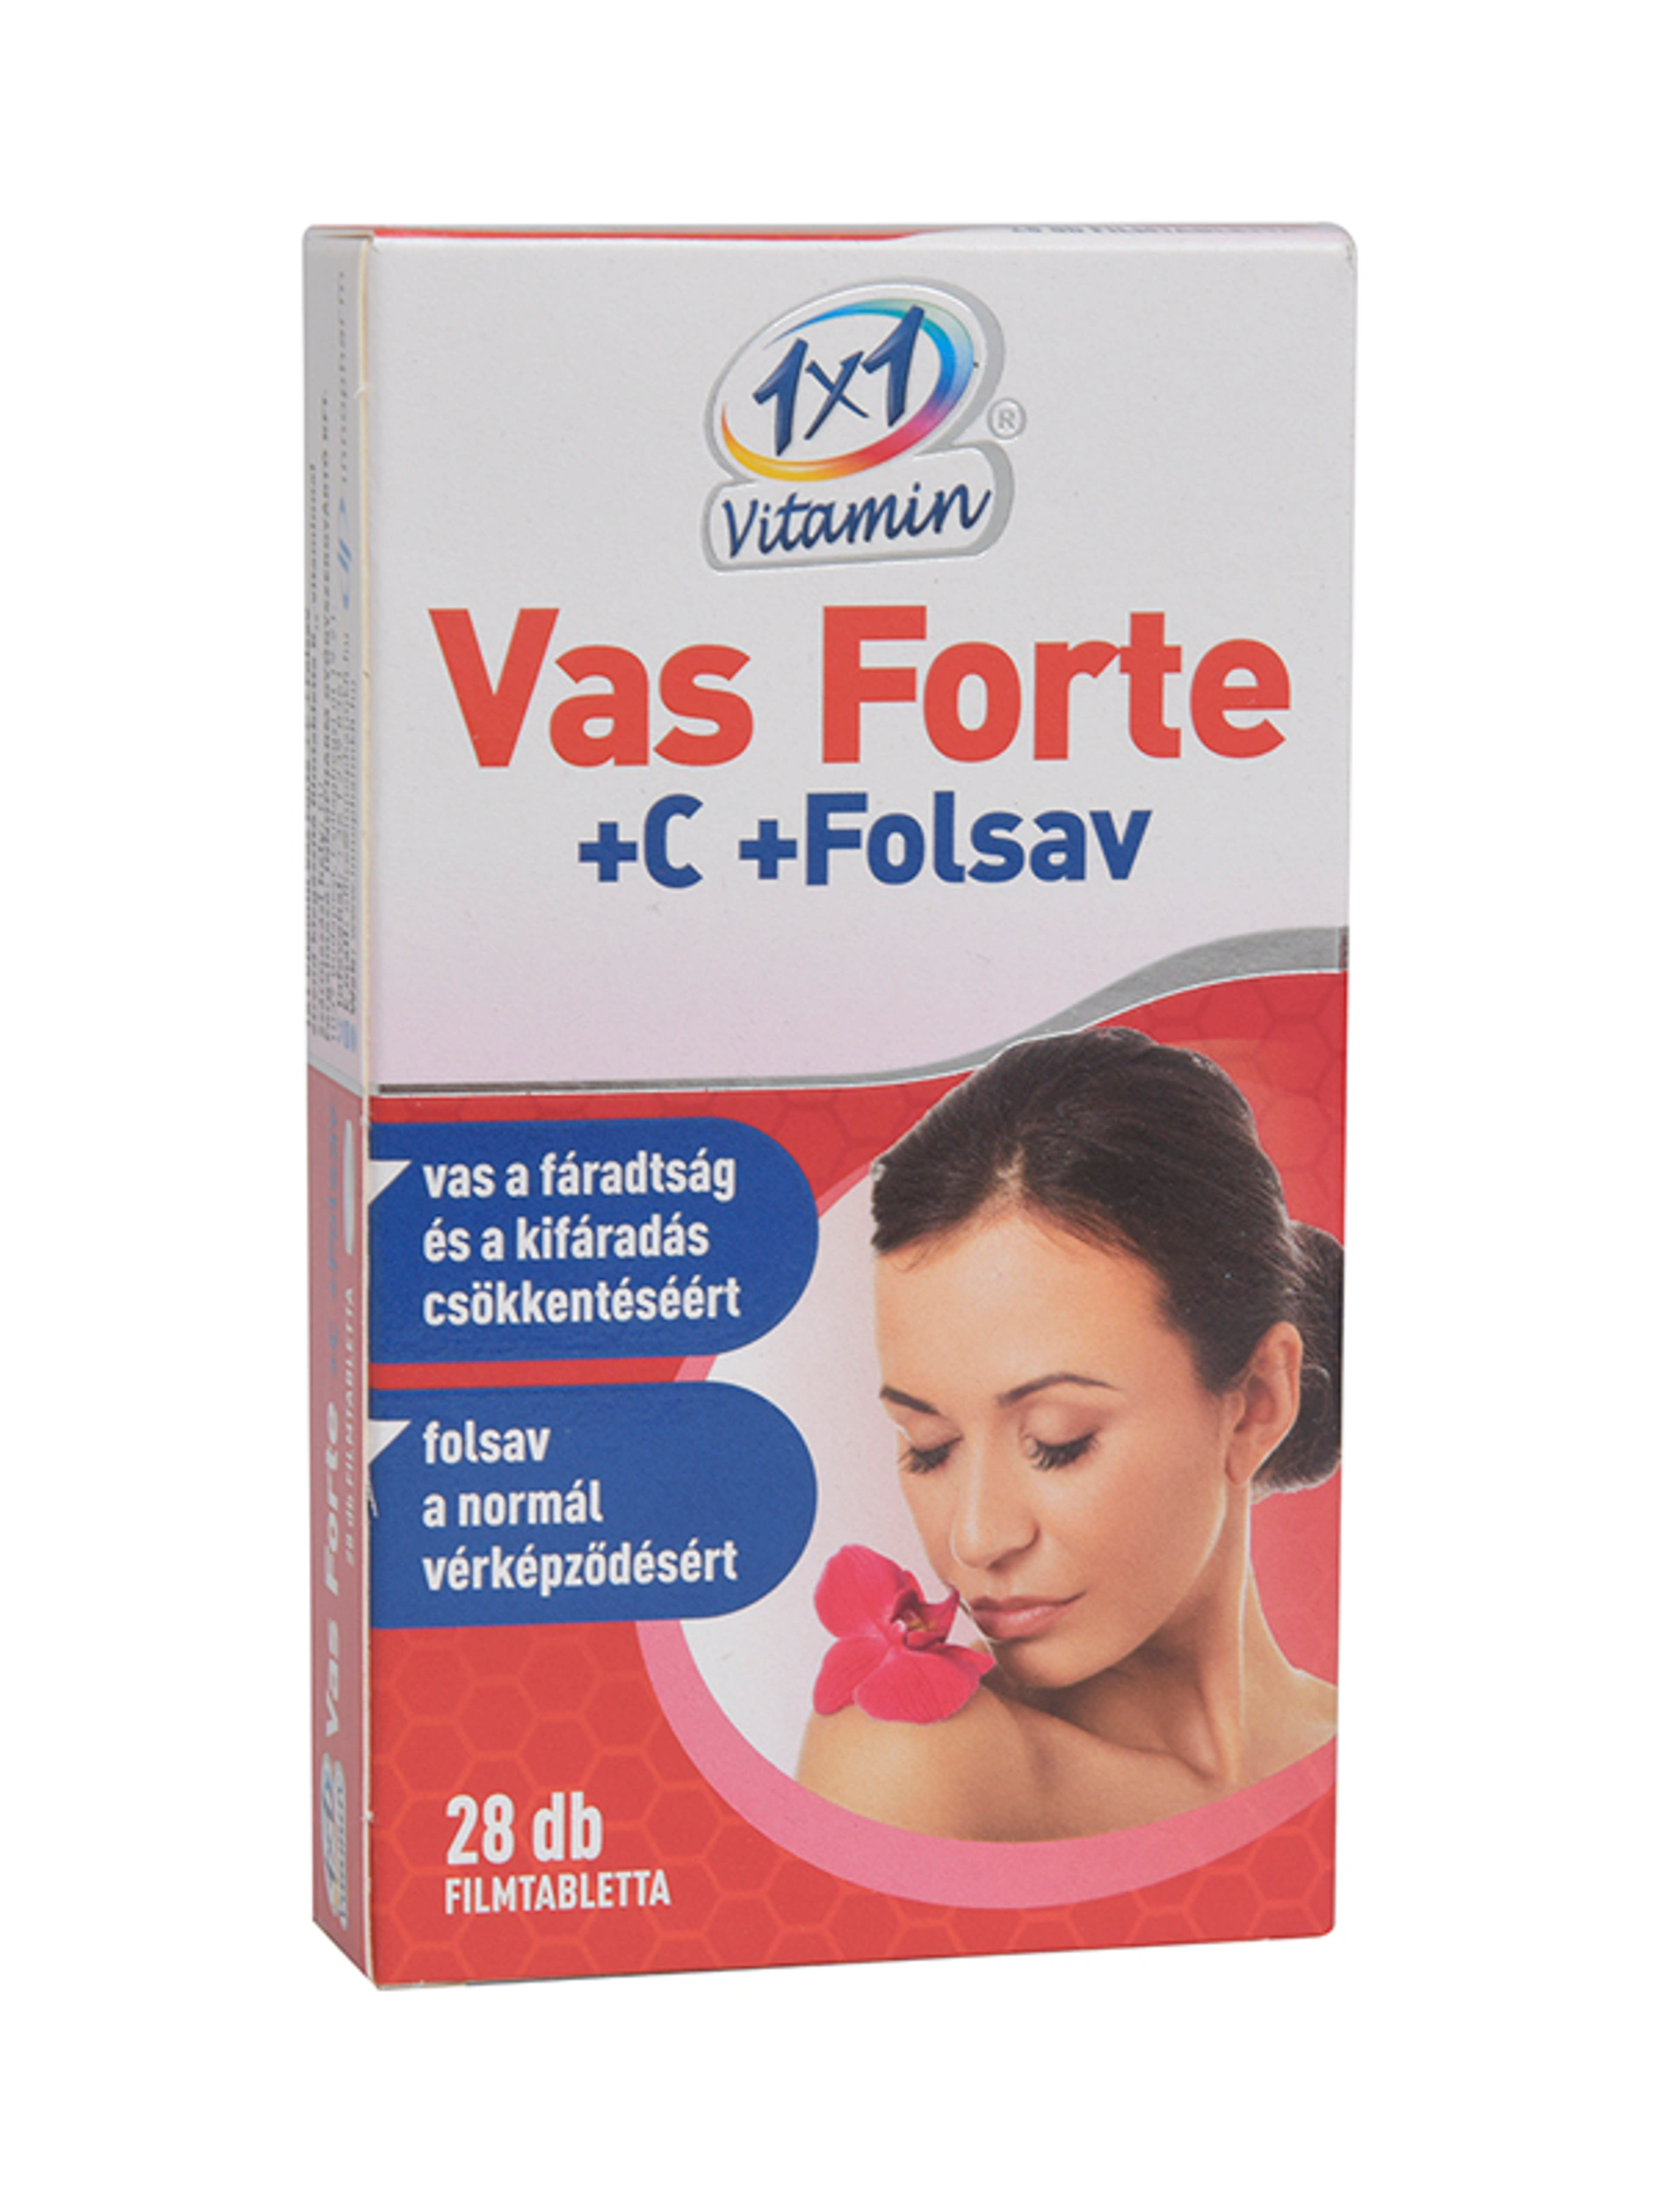 1x1 Vitamin Vas Forte Bioperin 500mg Tabletta - 28 db-1